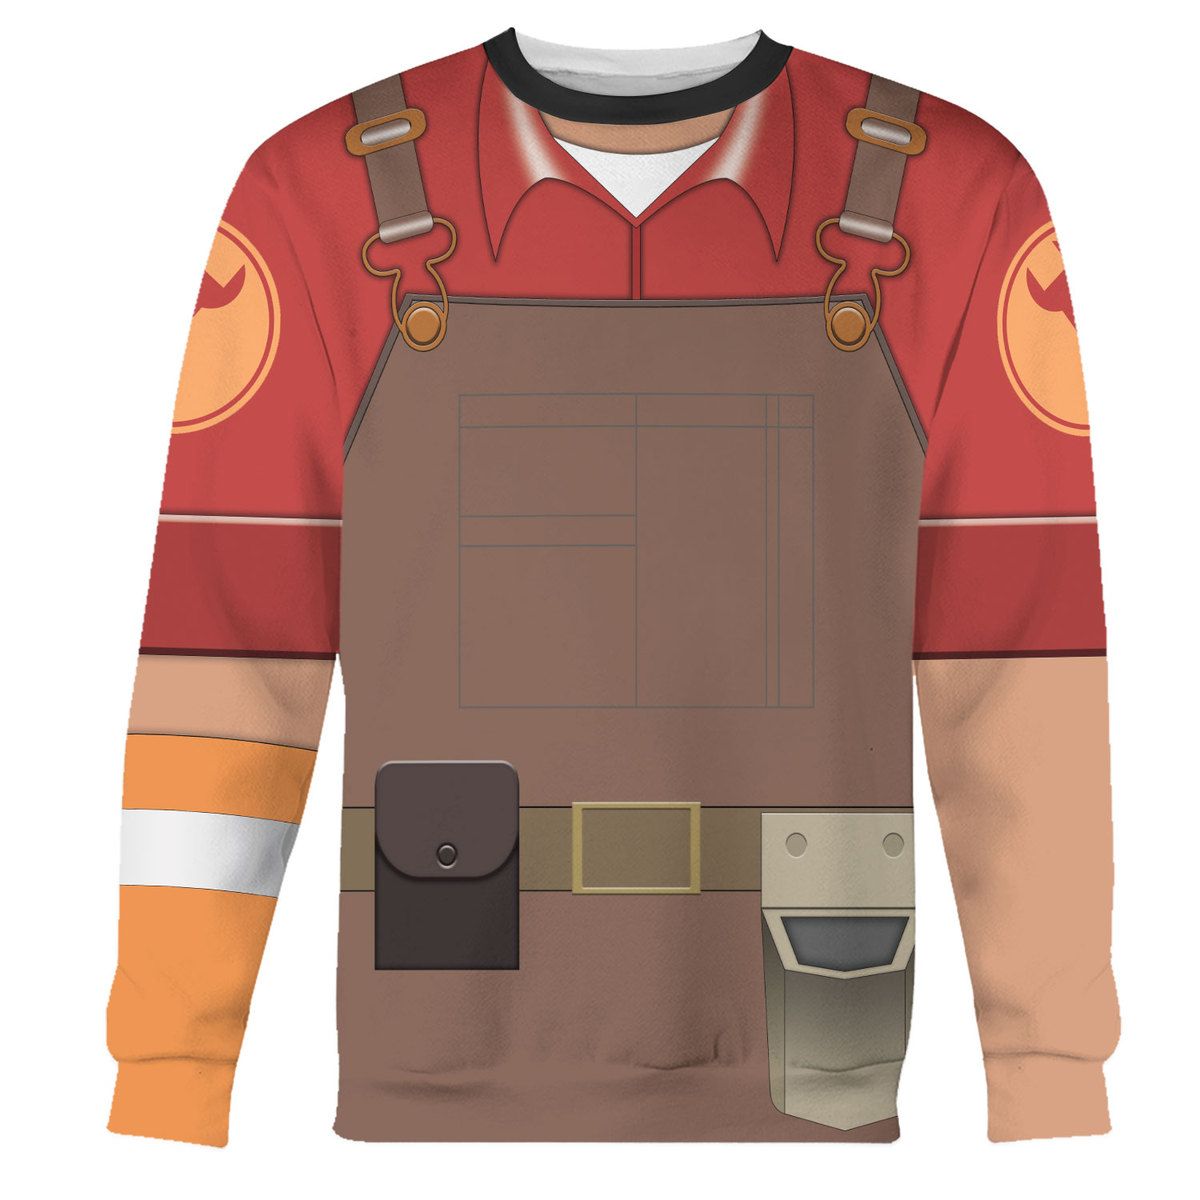 Engineer TF2 sweatshirt